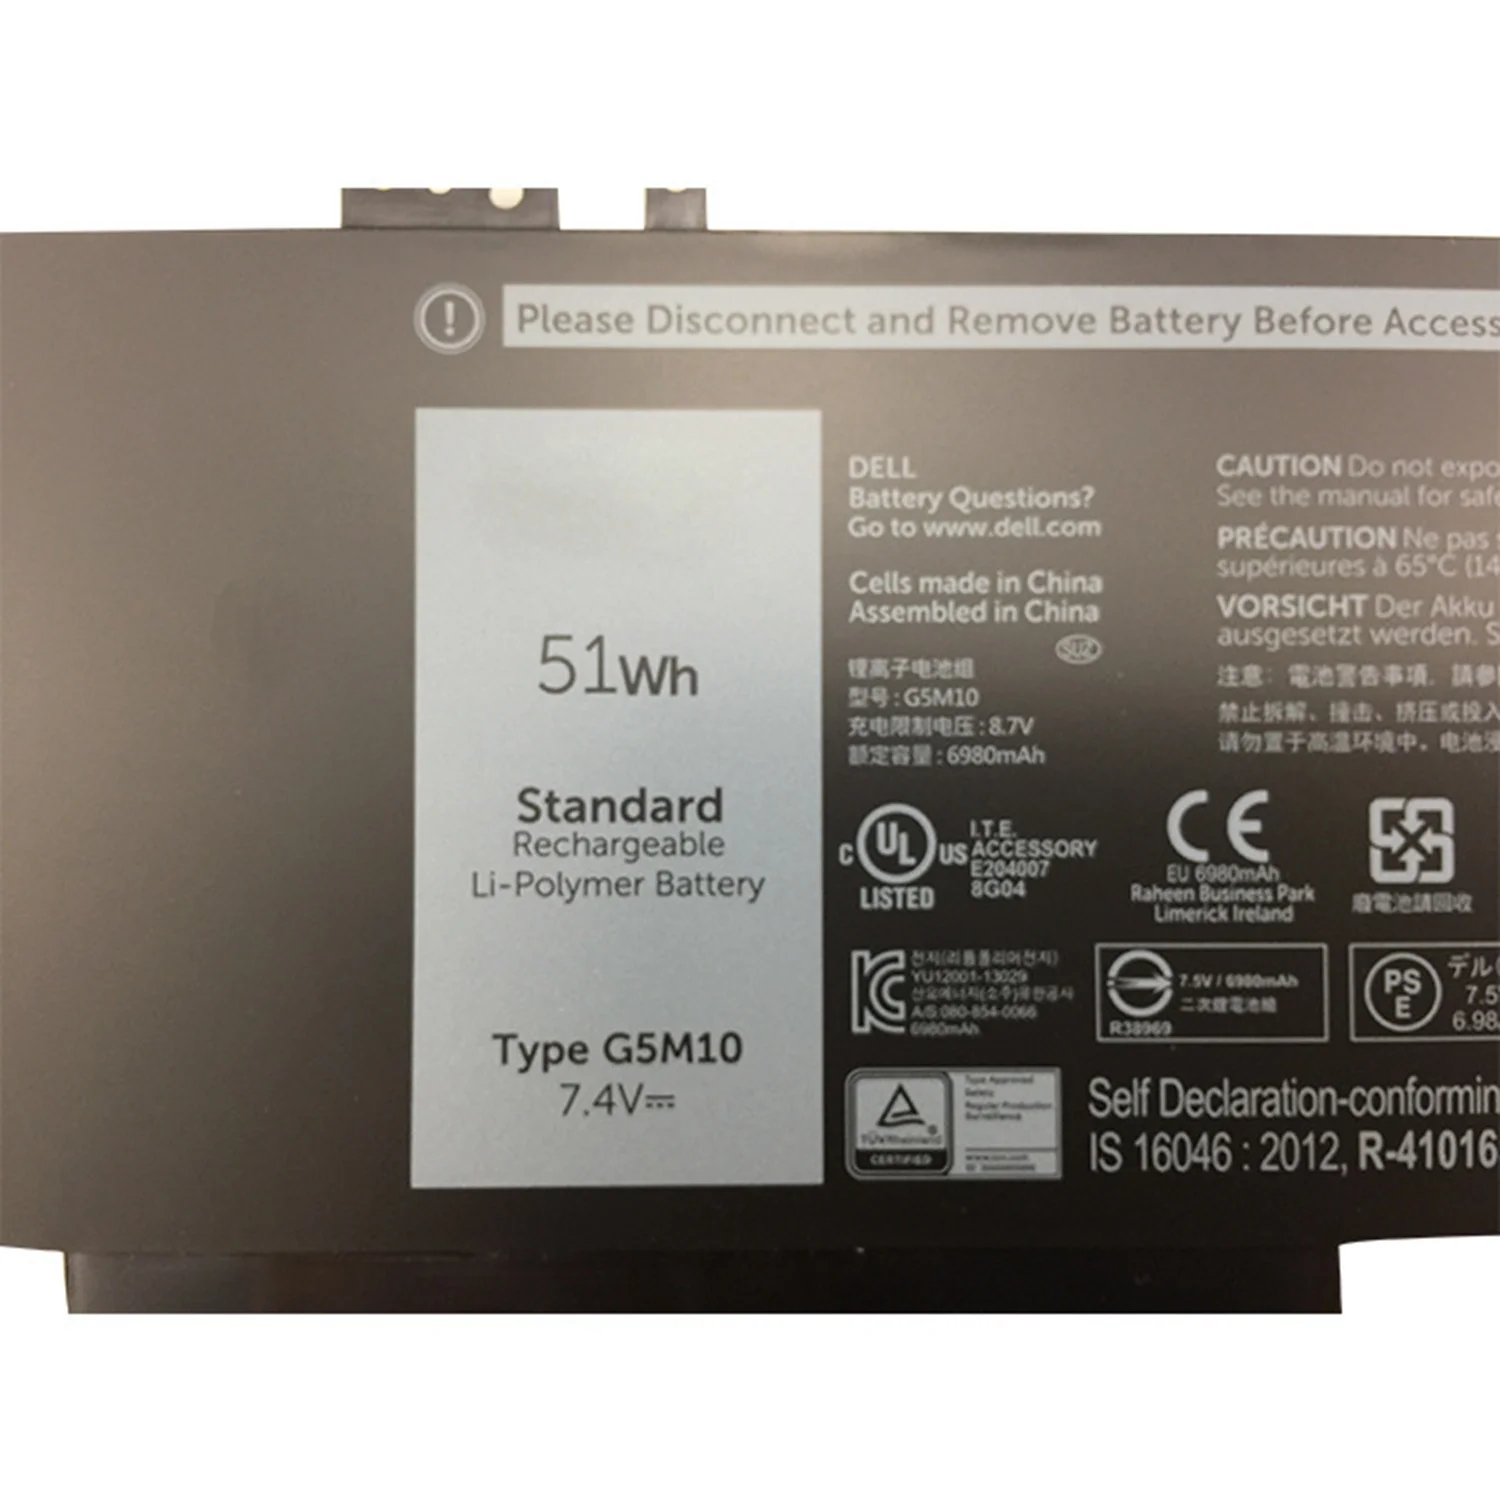 7.4V 51Wh G5M10 New Battery For Doll Latitude 3150 3160 E5250 E5450 E5550 Series | Компьютеры и офис